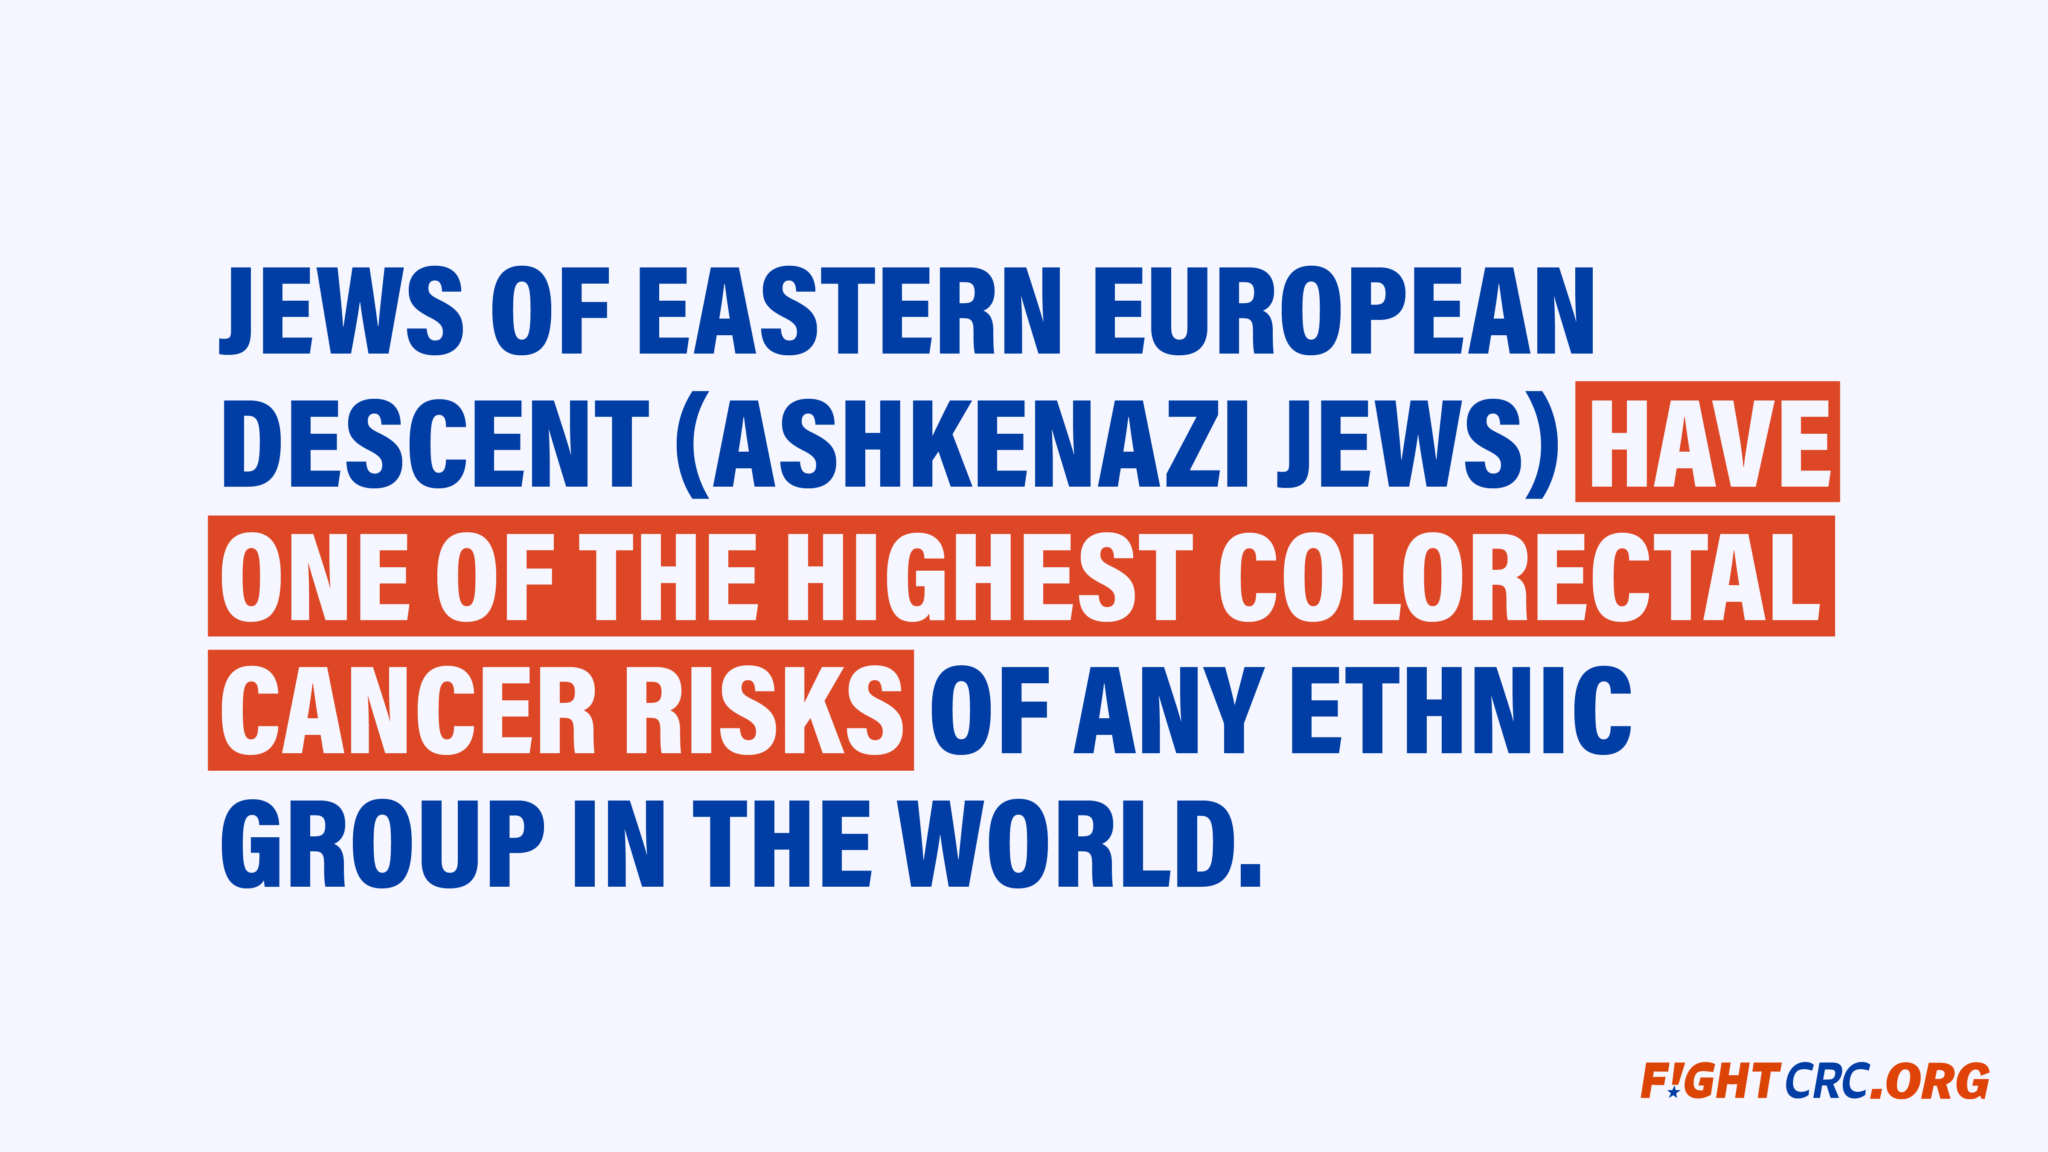 estadística judía sobre el cáncer colorrectal